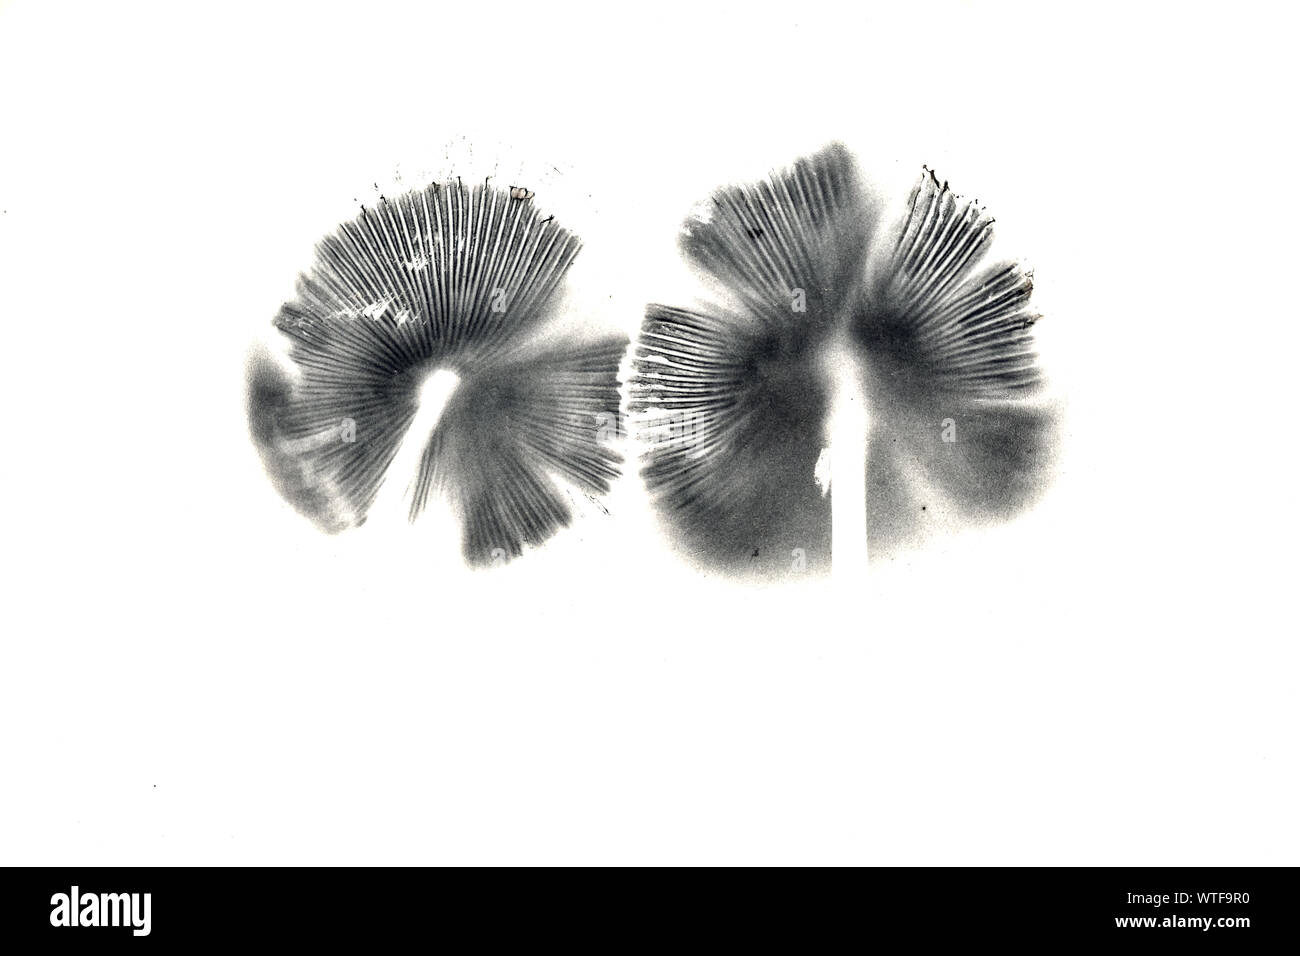 Deux impressions de spores sur un fond blanc. Impressions de spores sont un outil utile pour l'identification des champignons. Banque D'Images